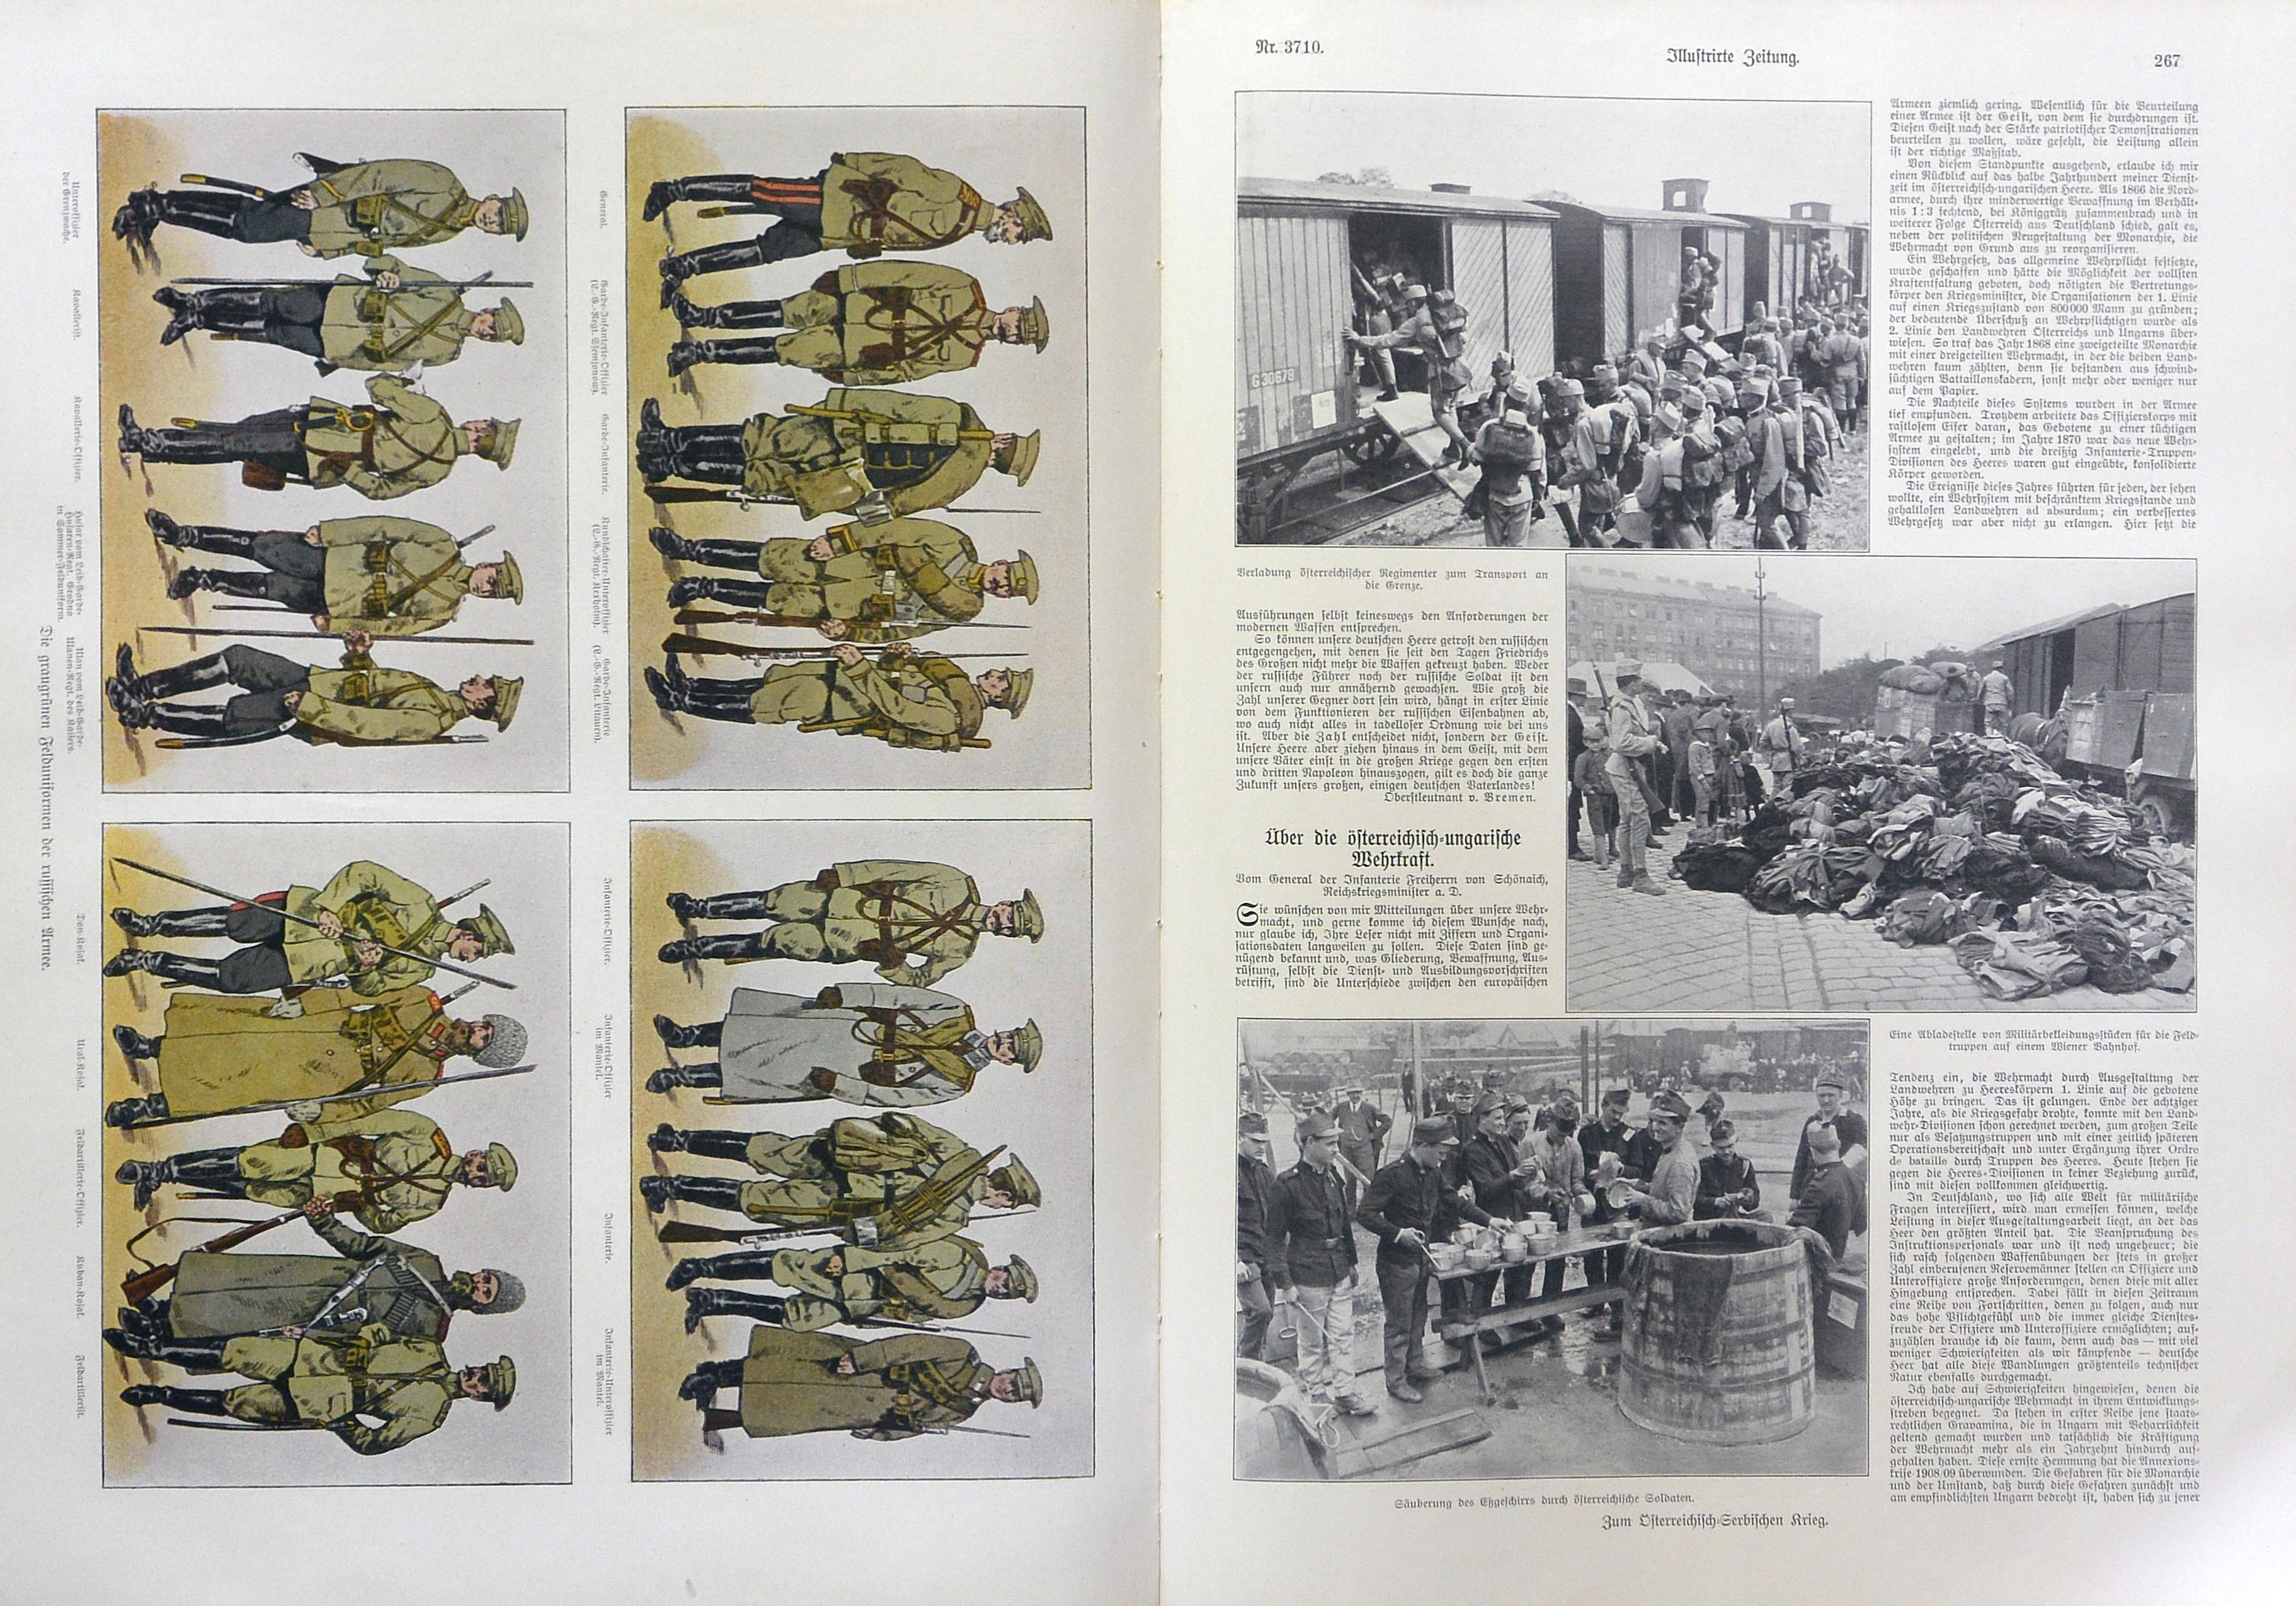 the Russian uniforms and the first photos of the regiments leaving for the front - le uniformi russe e le prime foto dei soldati che partono per il fronte